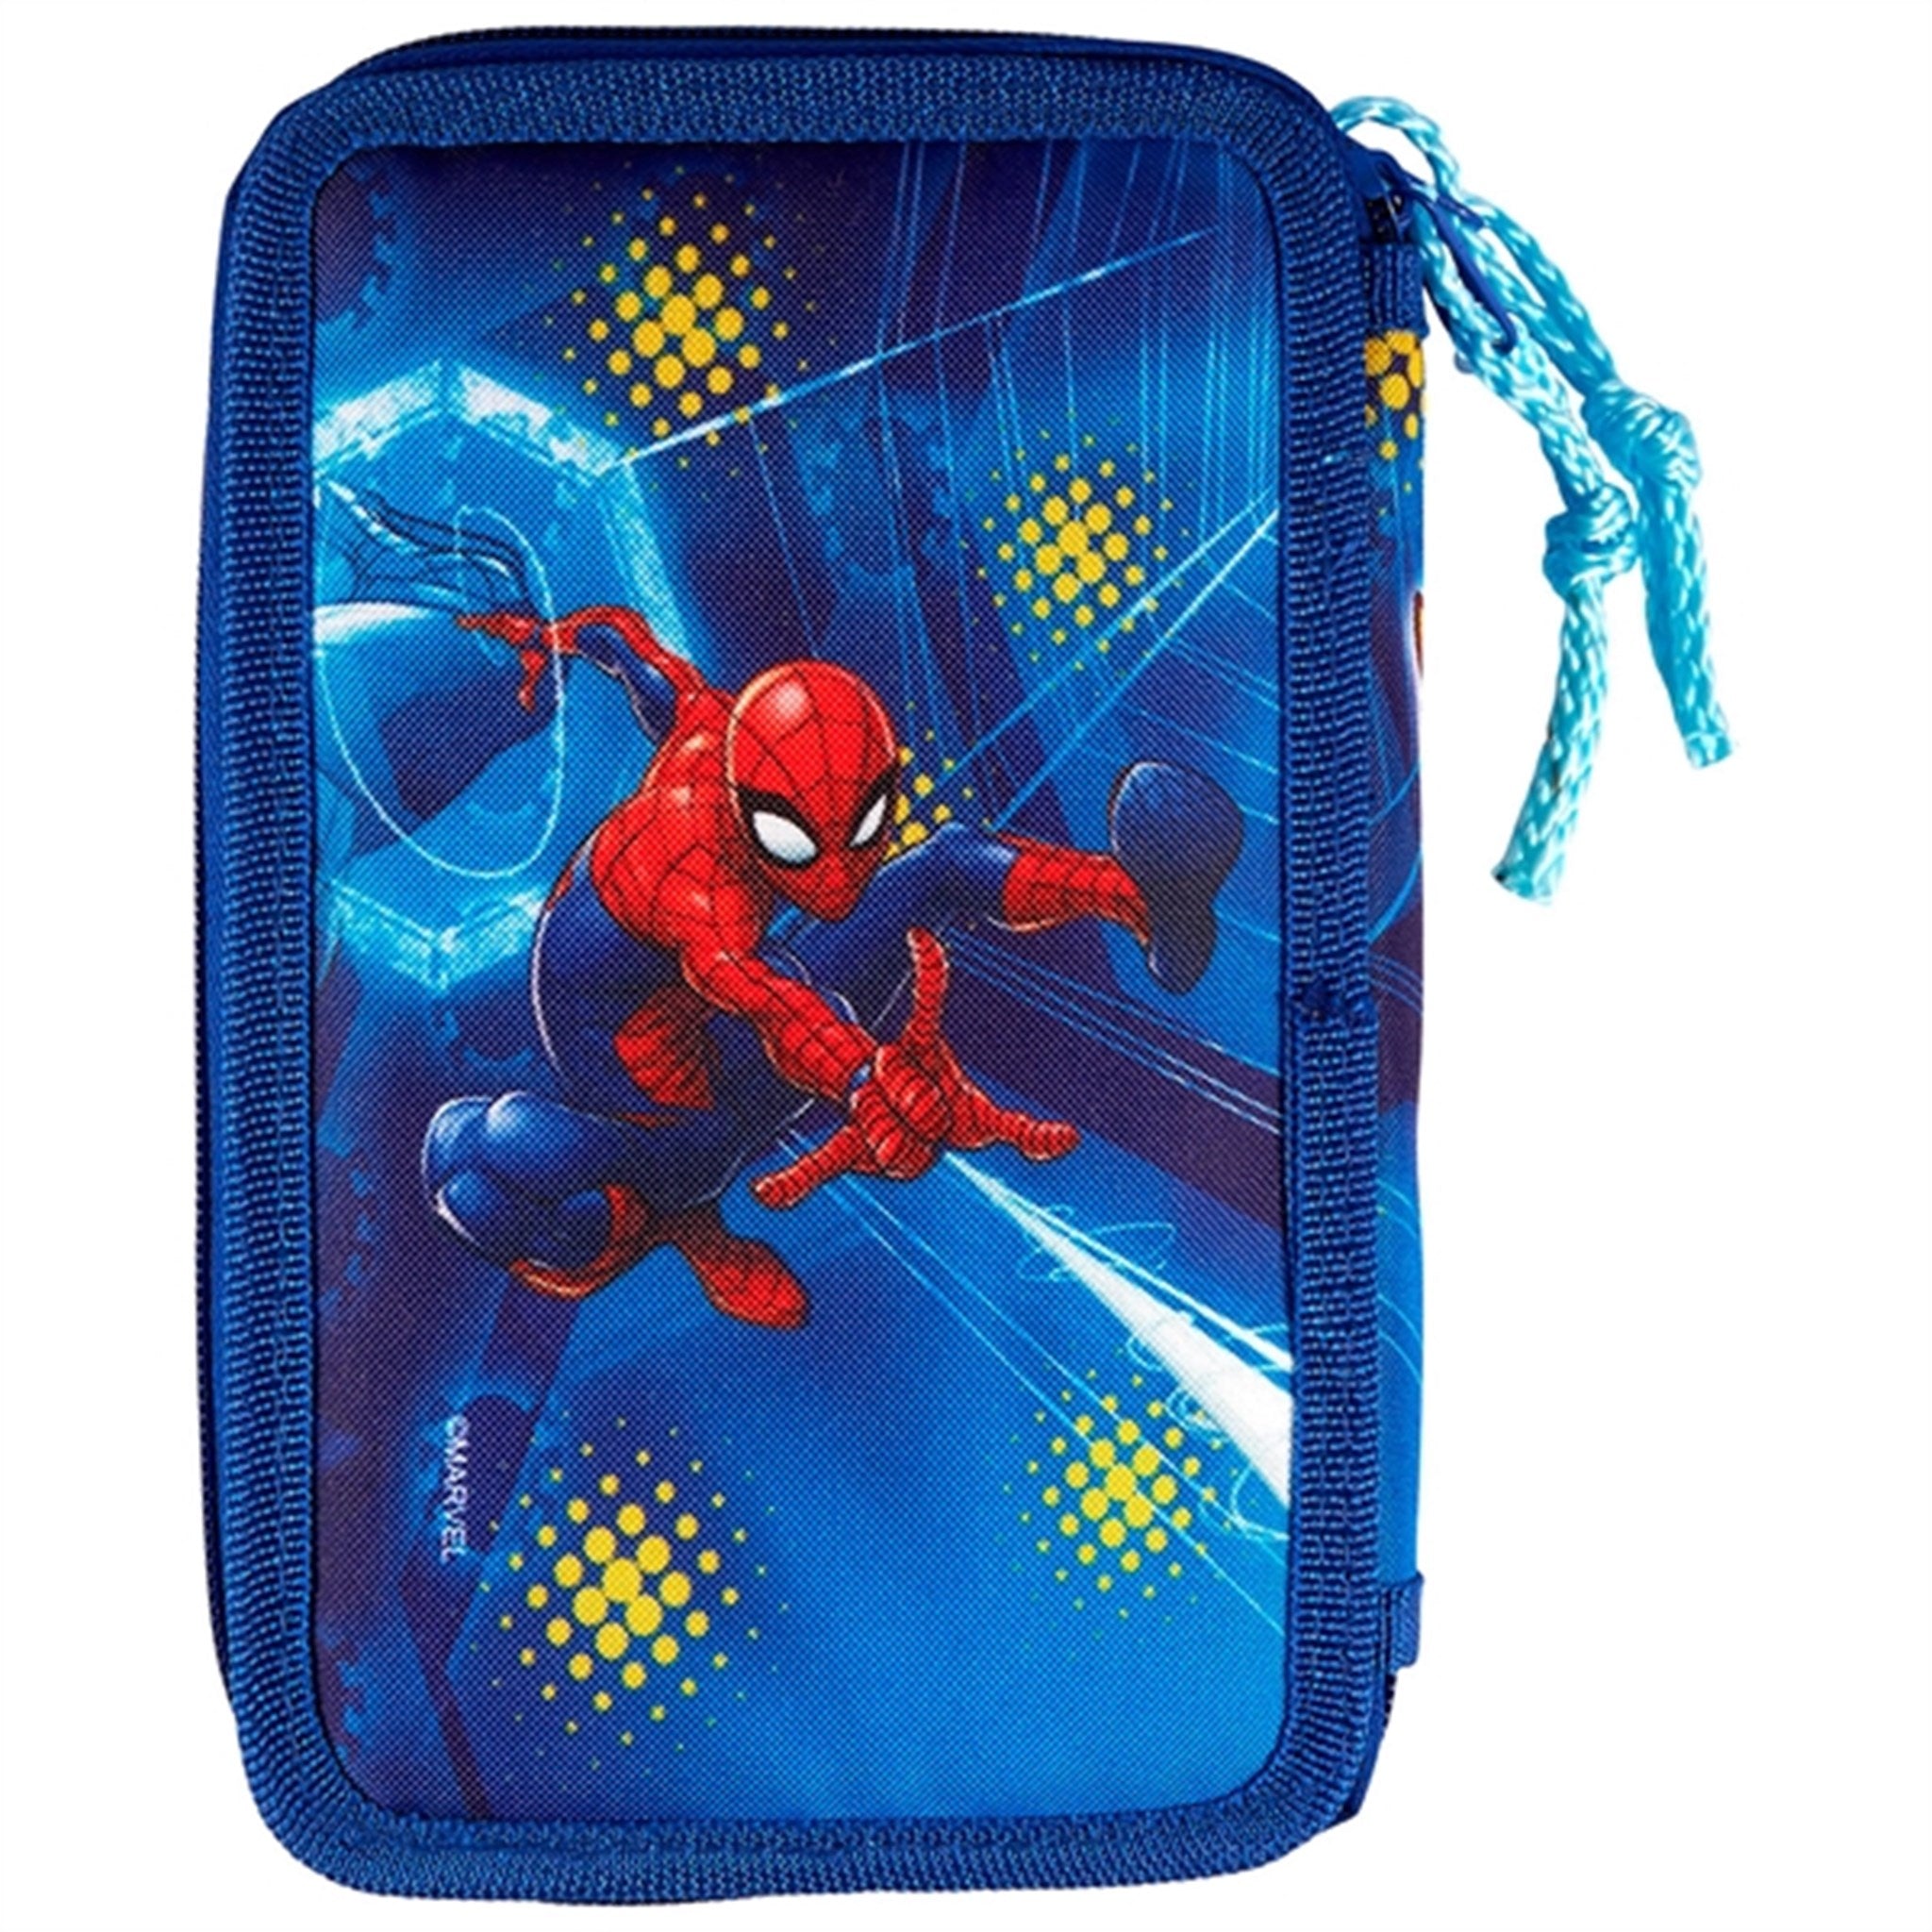 Euromic Spider-Man Pencil Case 4